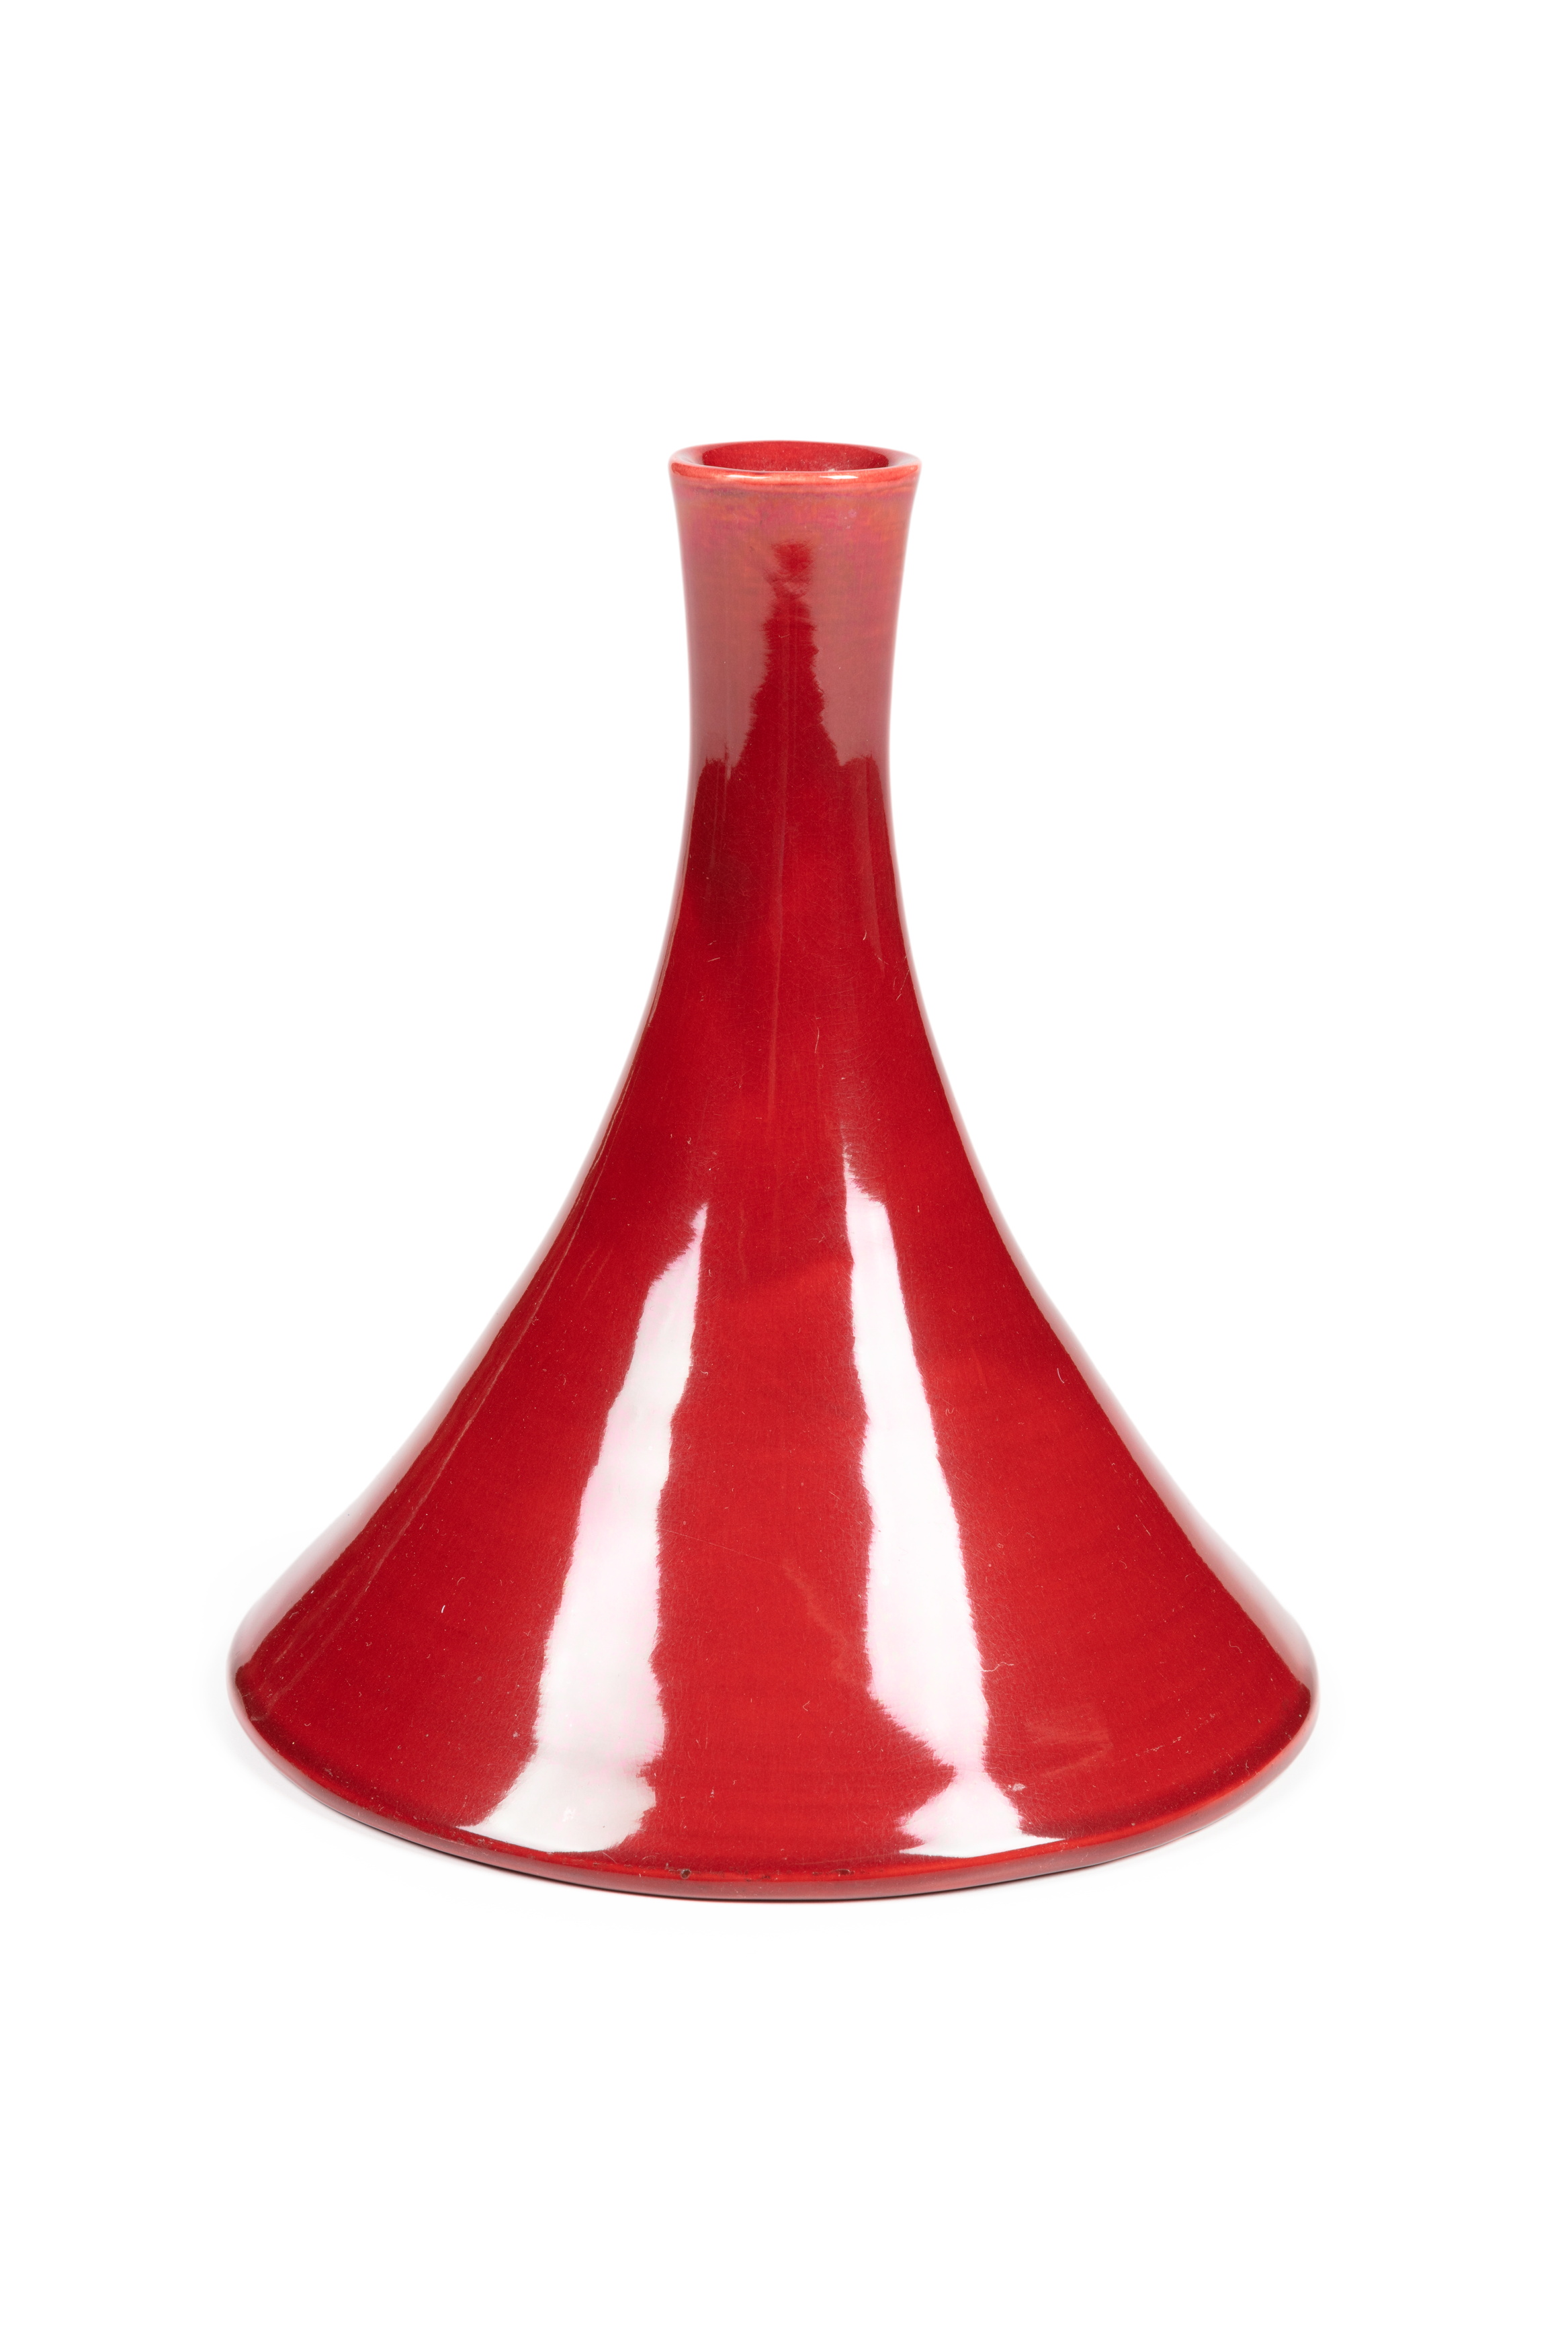 Earthenware vase designed by Christopher Dresser for Linthorpe Pottery